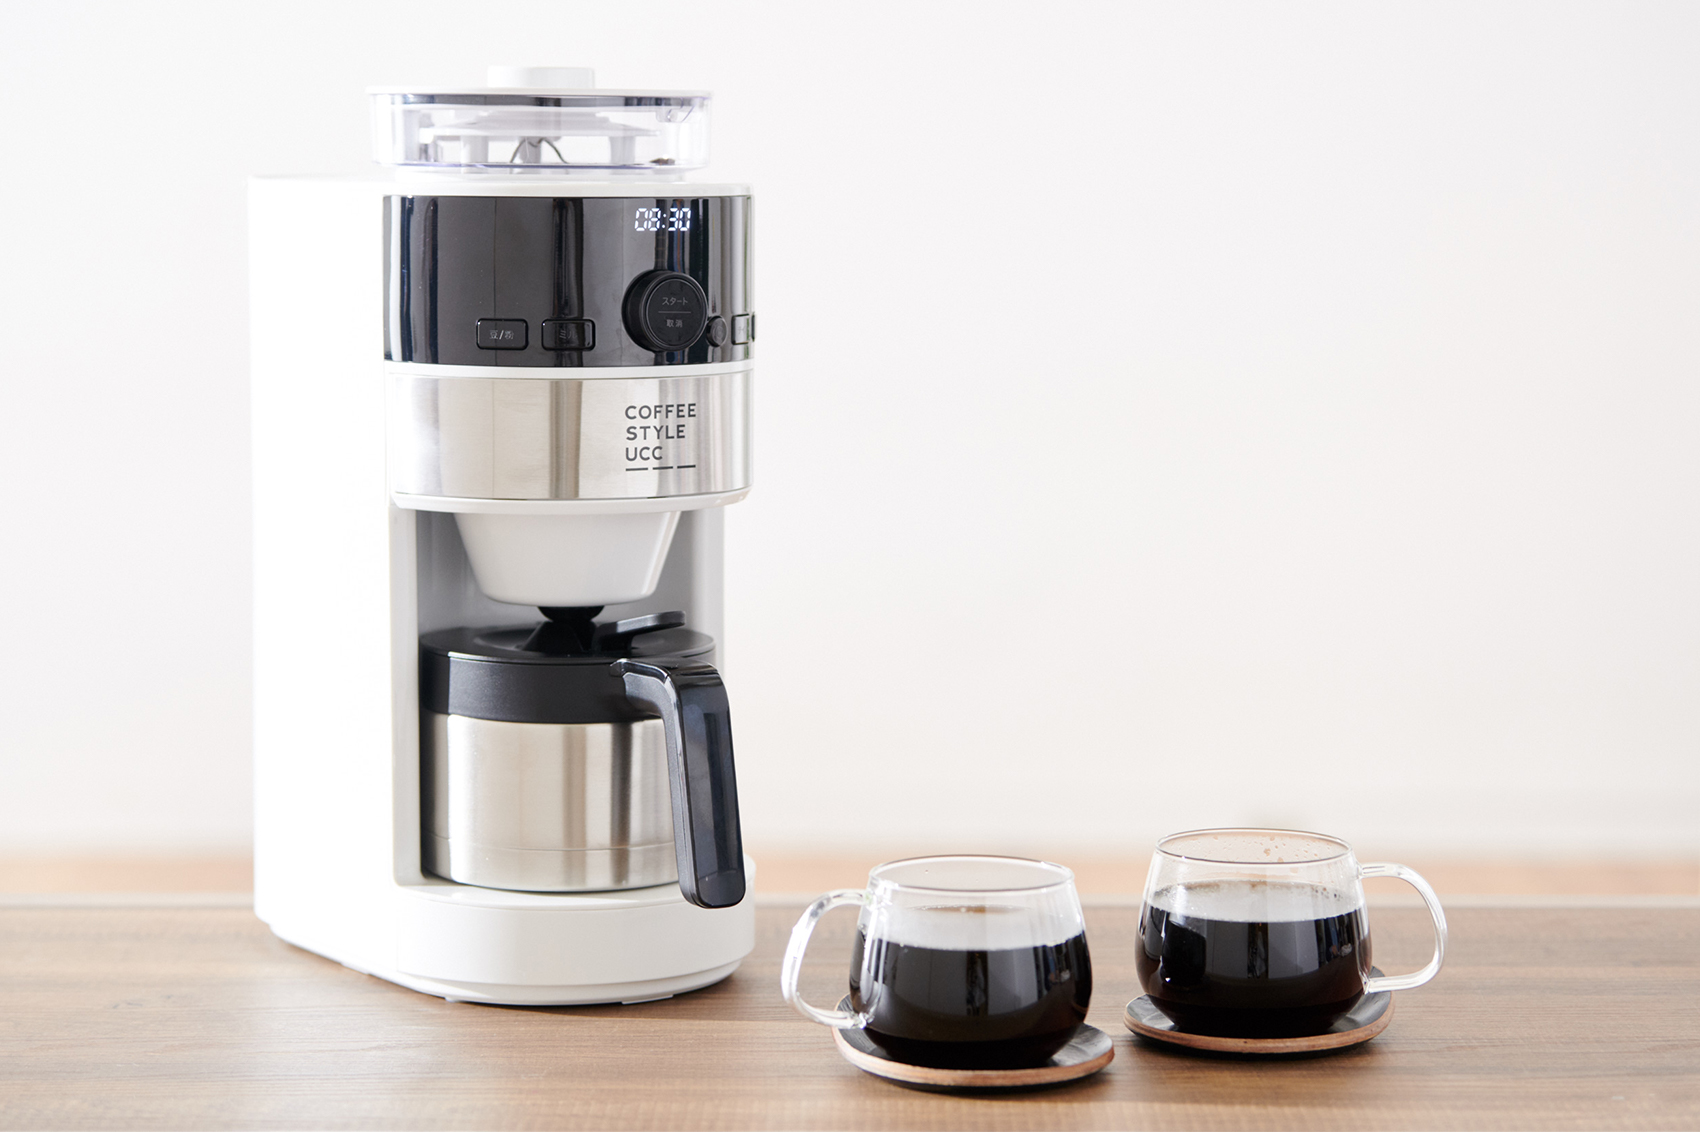 UCCがsiroca社と全自動コーヒーメーカーを共同開発4月25日（木）より 